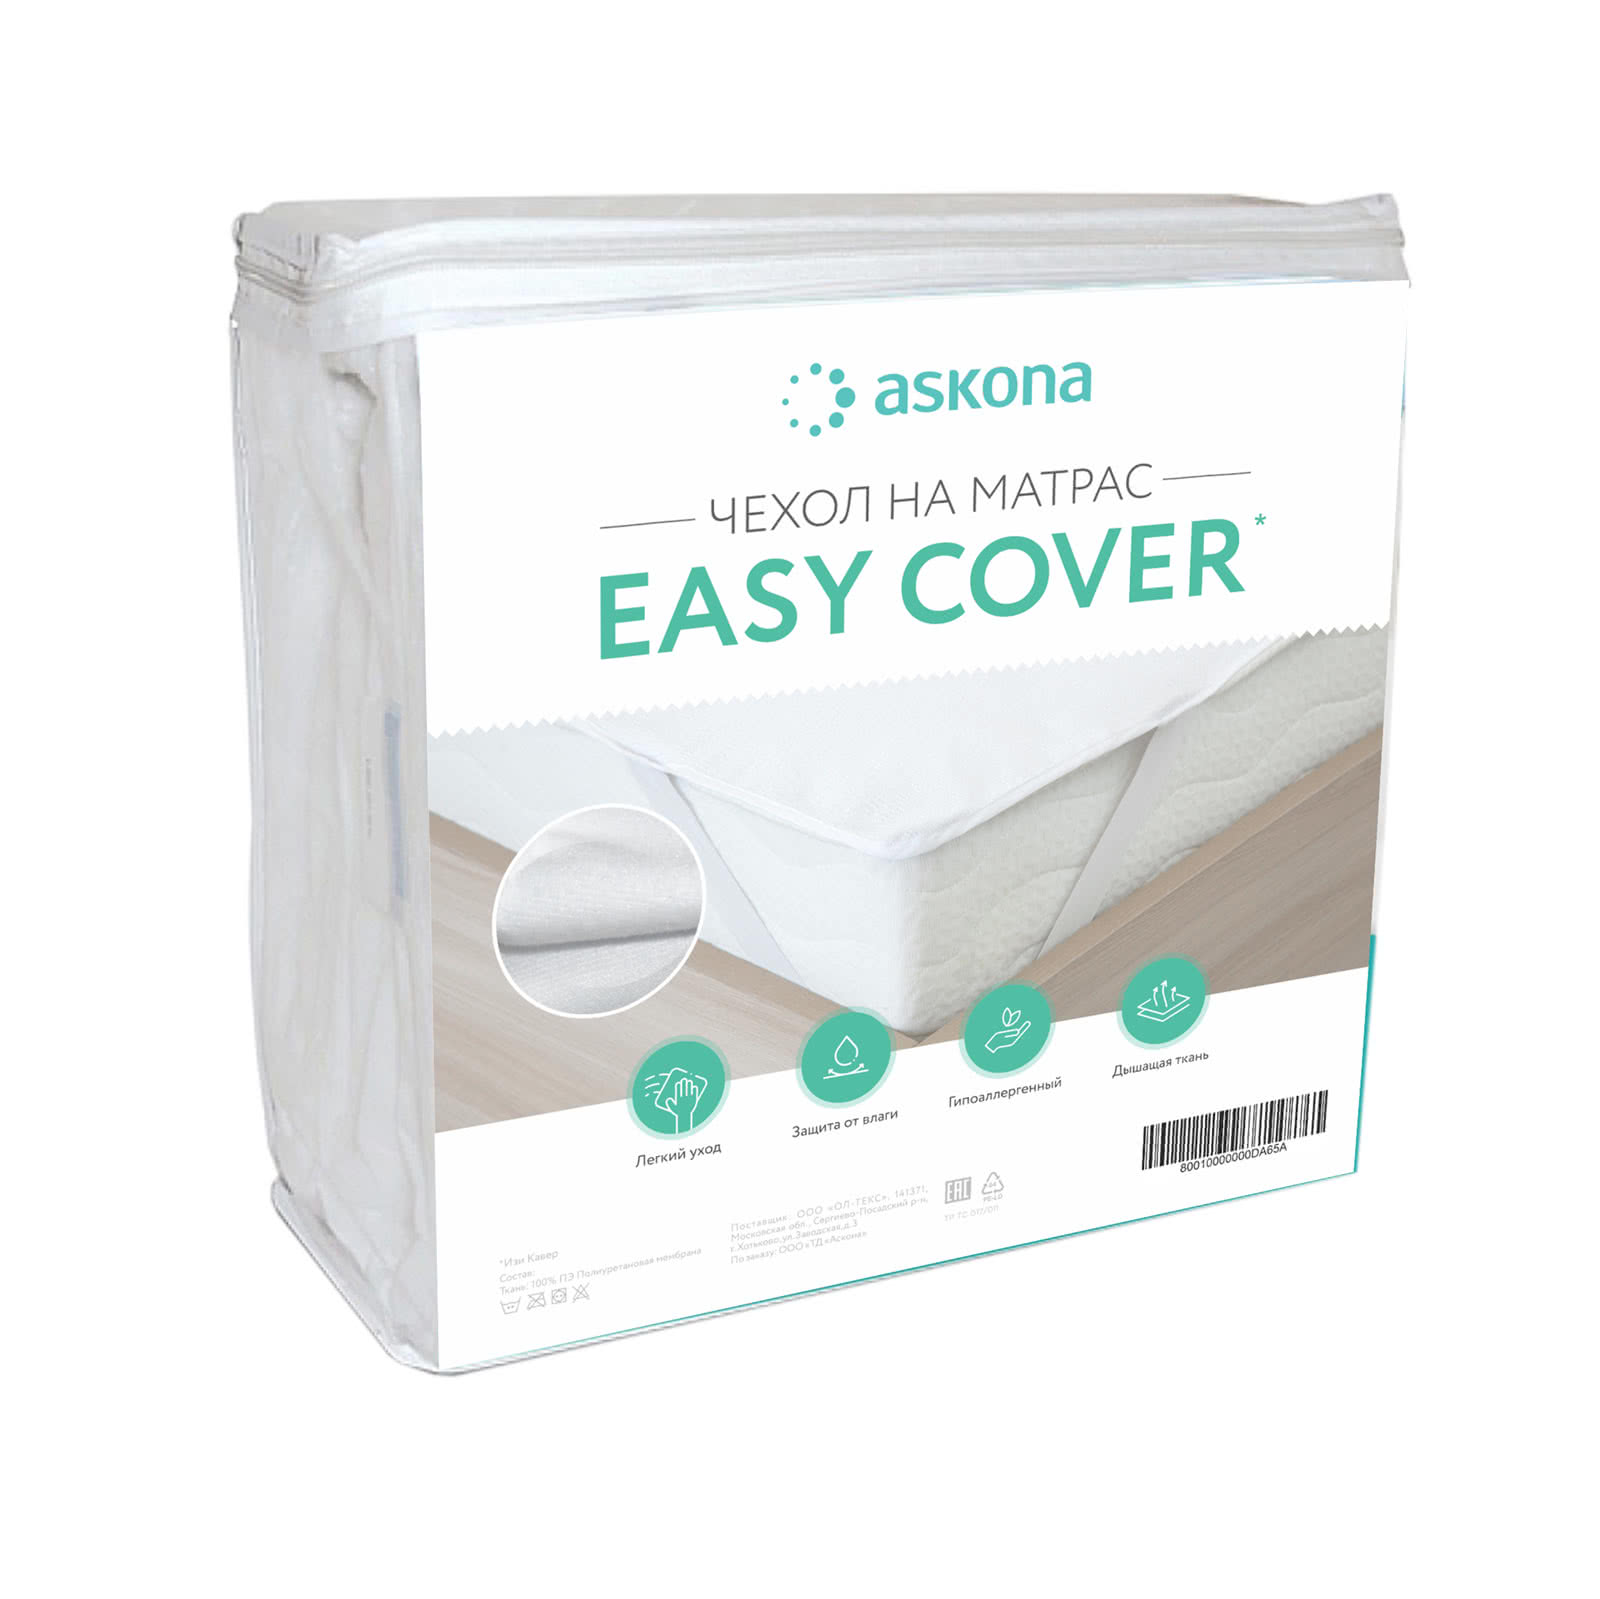 Купить Водонепроницаемый наматрасник Аскона Easy Cover 80 х 190 см недорого в интернет-магазине